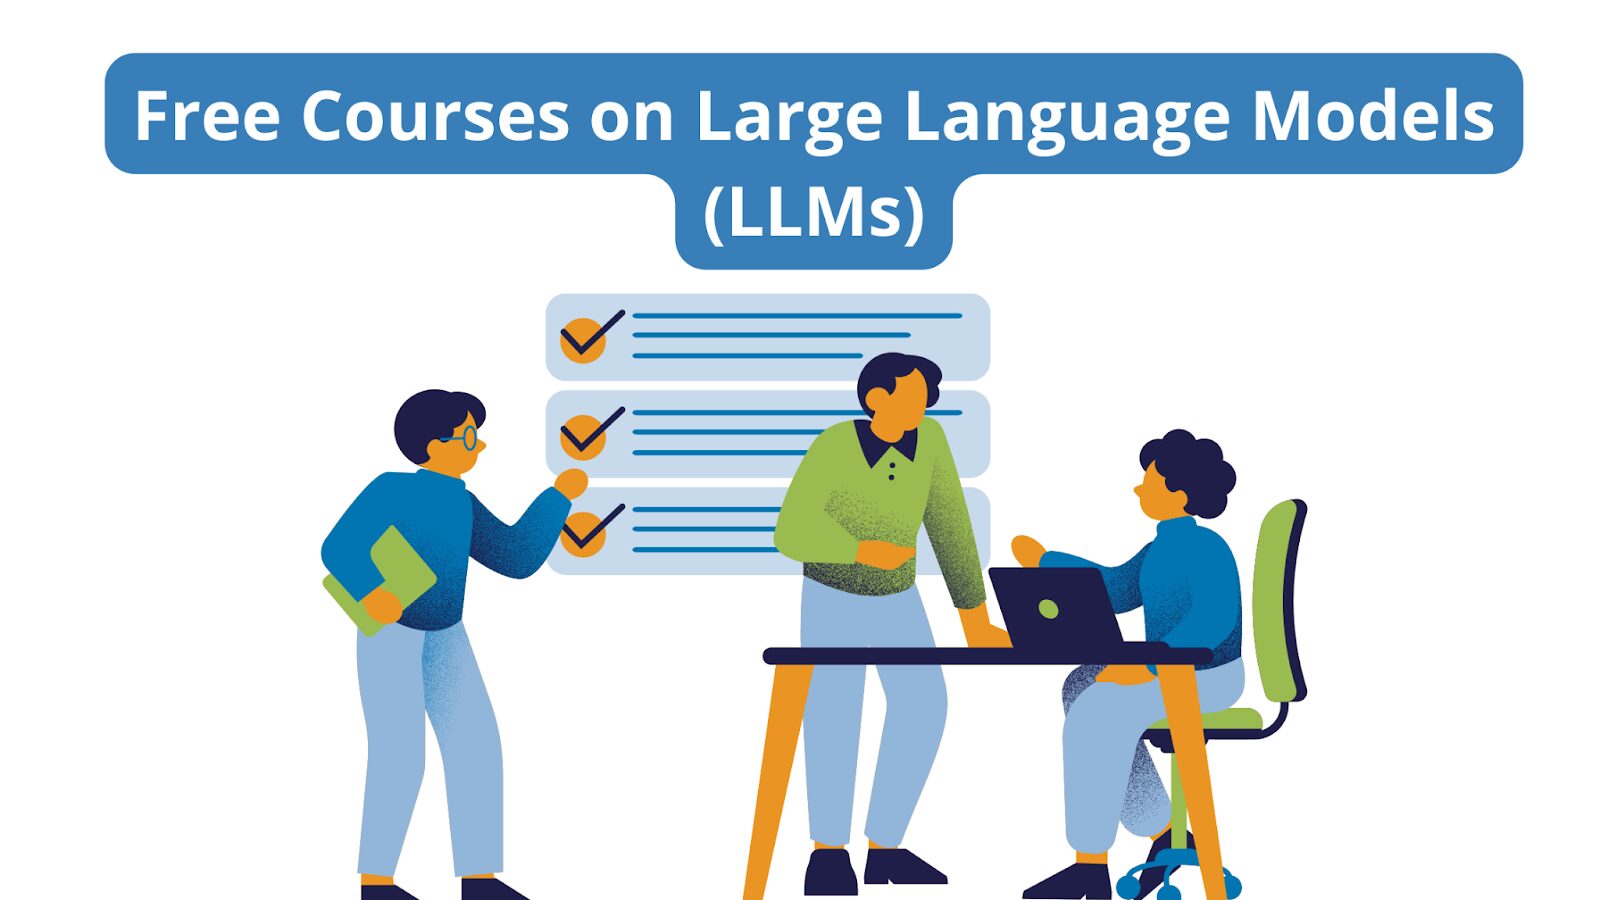 Más cursos gratuitos sobre modelos de lenguaje grandes